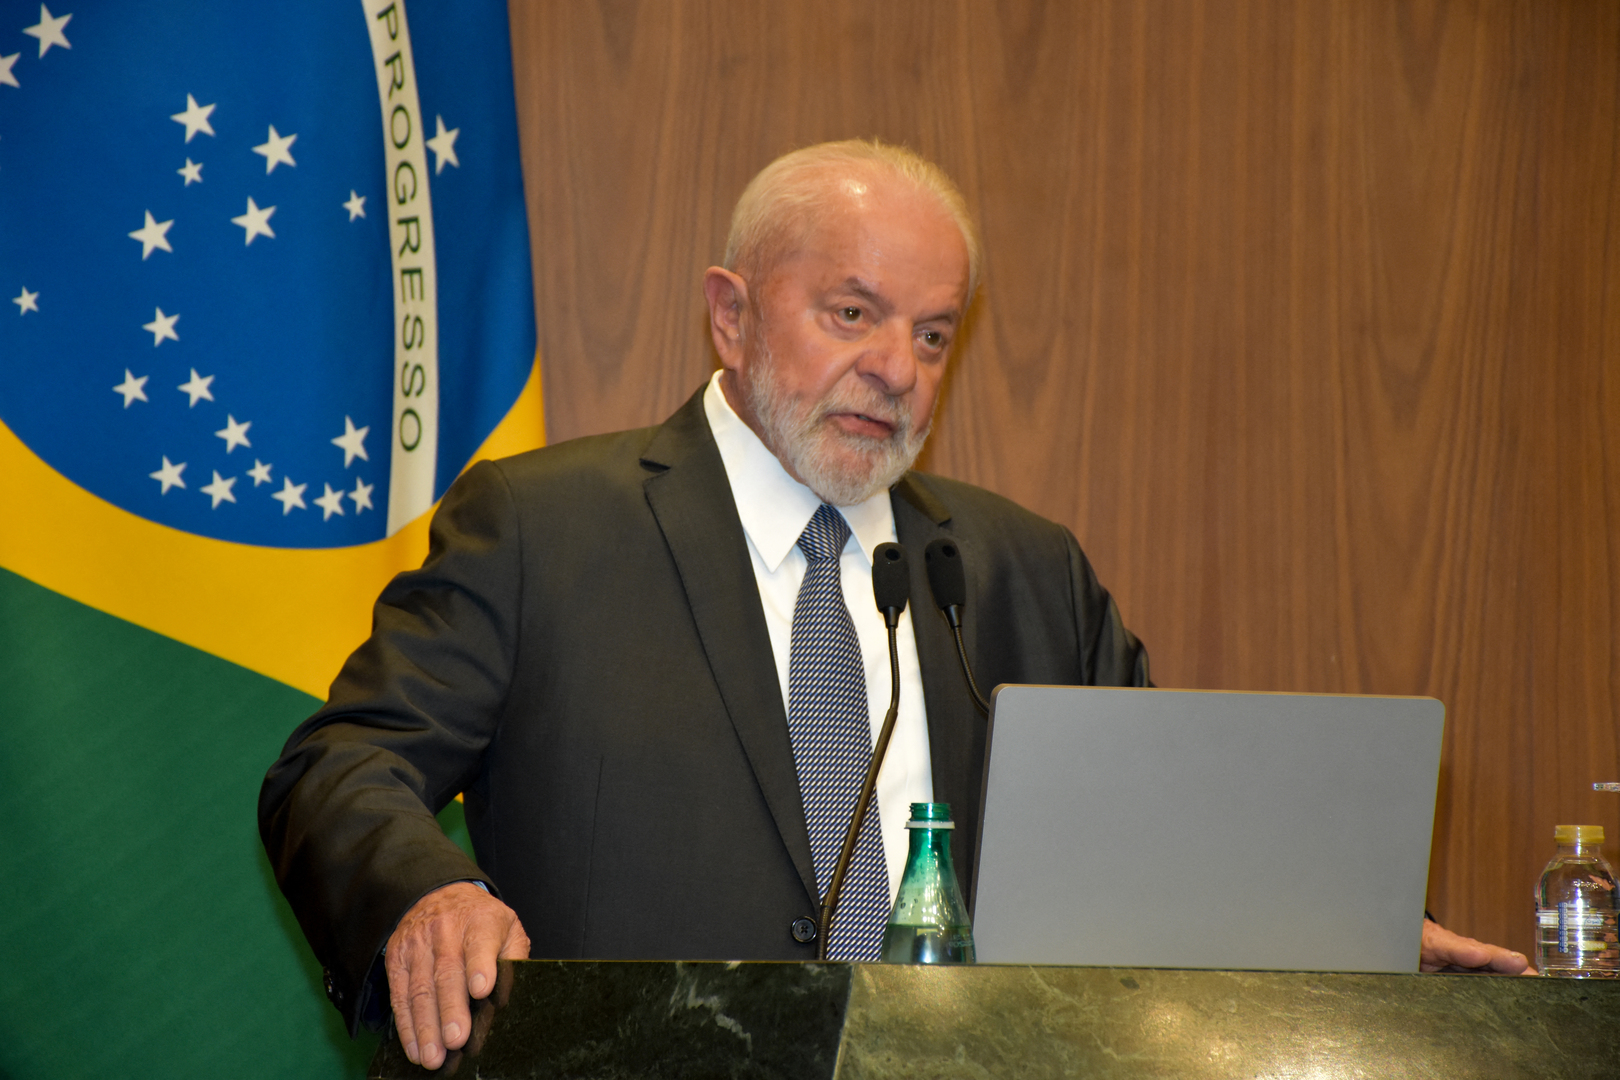 الخارجية الإسرائيلية تقدم على خطوة غير مسبوقة في العرف الدبلوماسي تجاه السفير البرازيلي